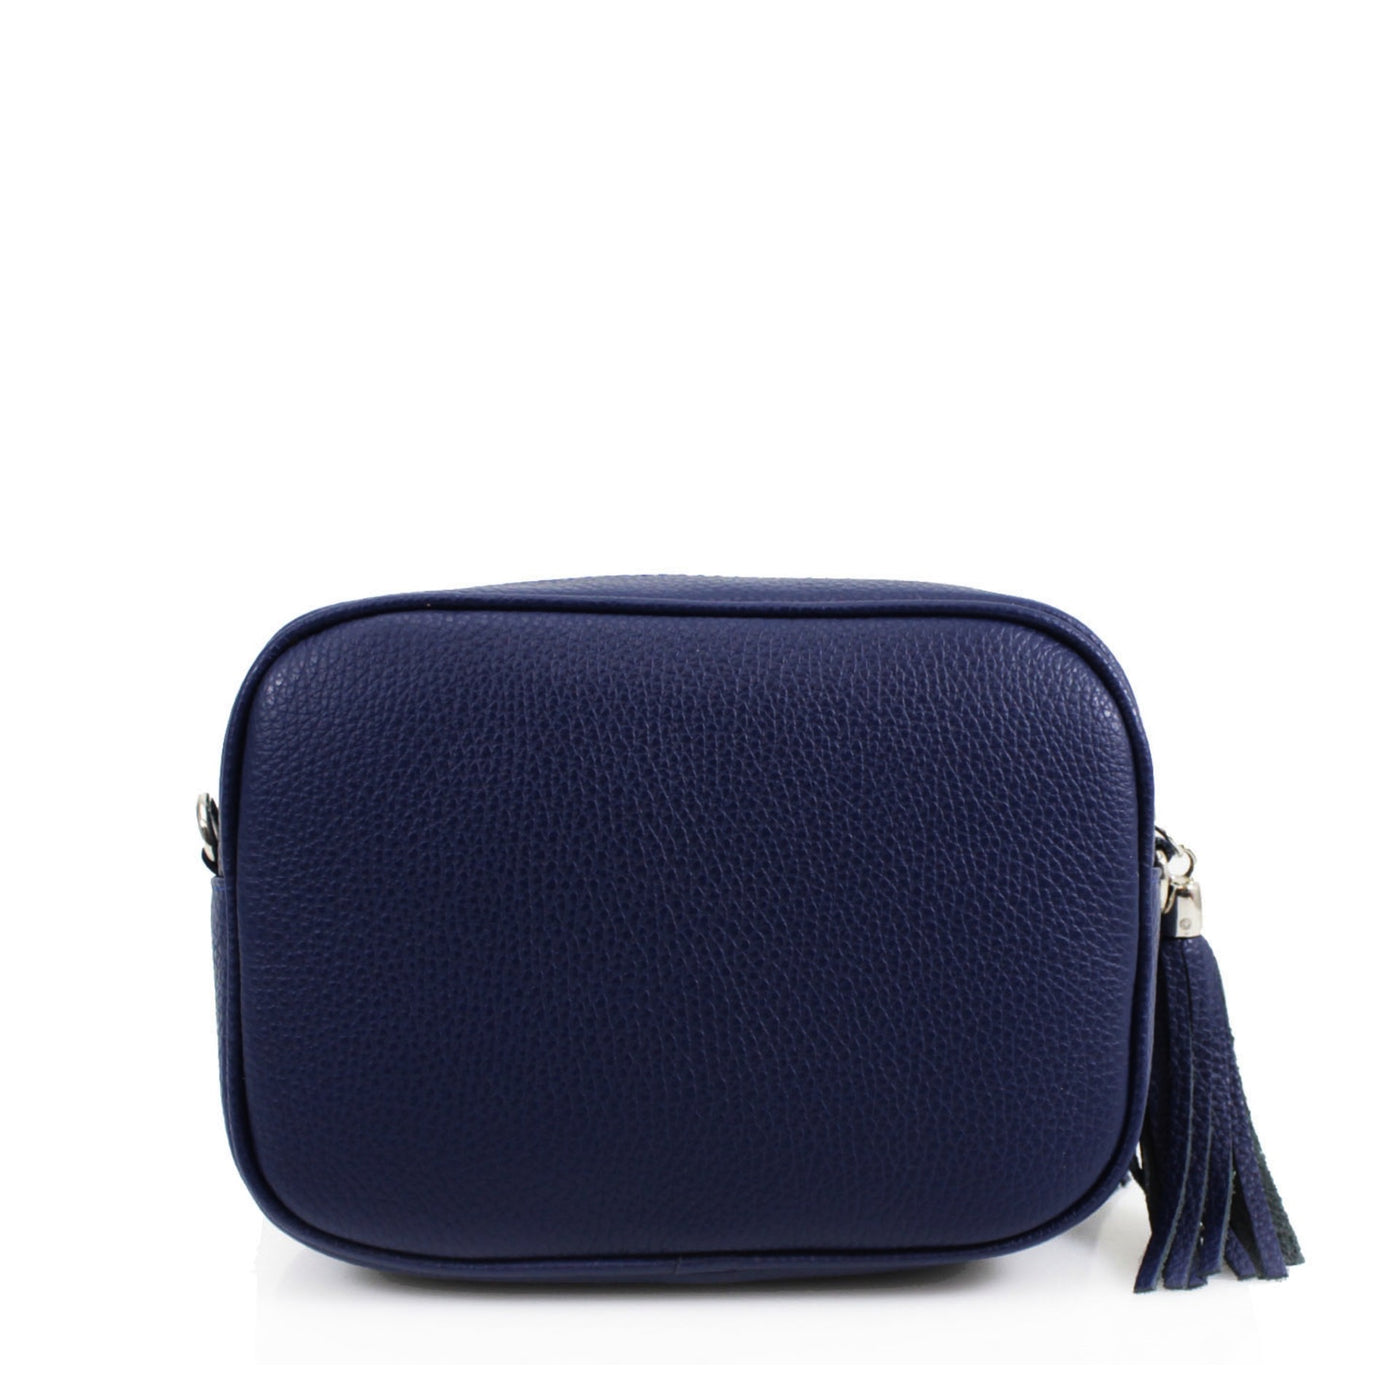 Leather Camera Tassel Handbag - Navy Blue